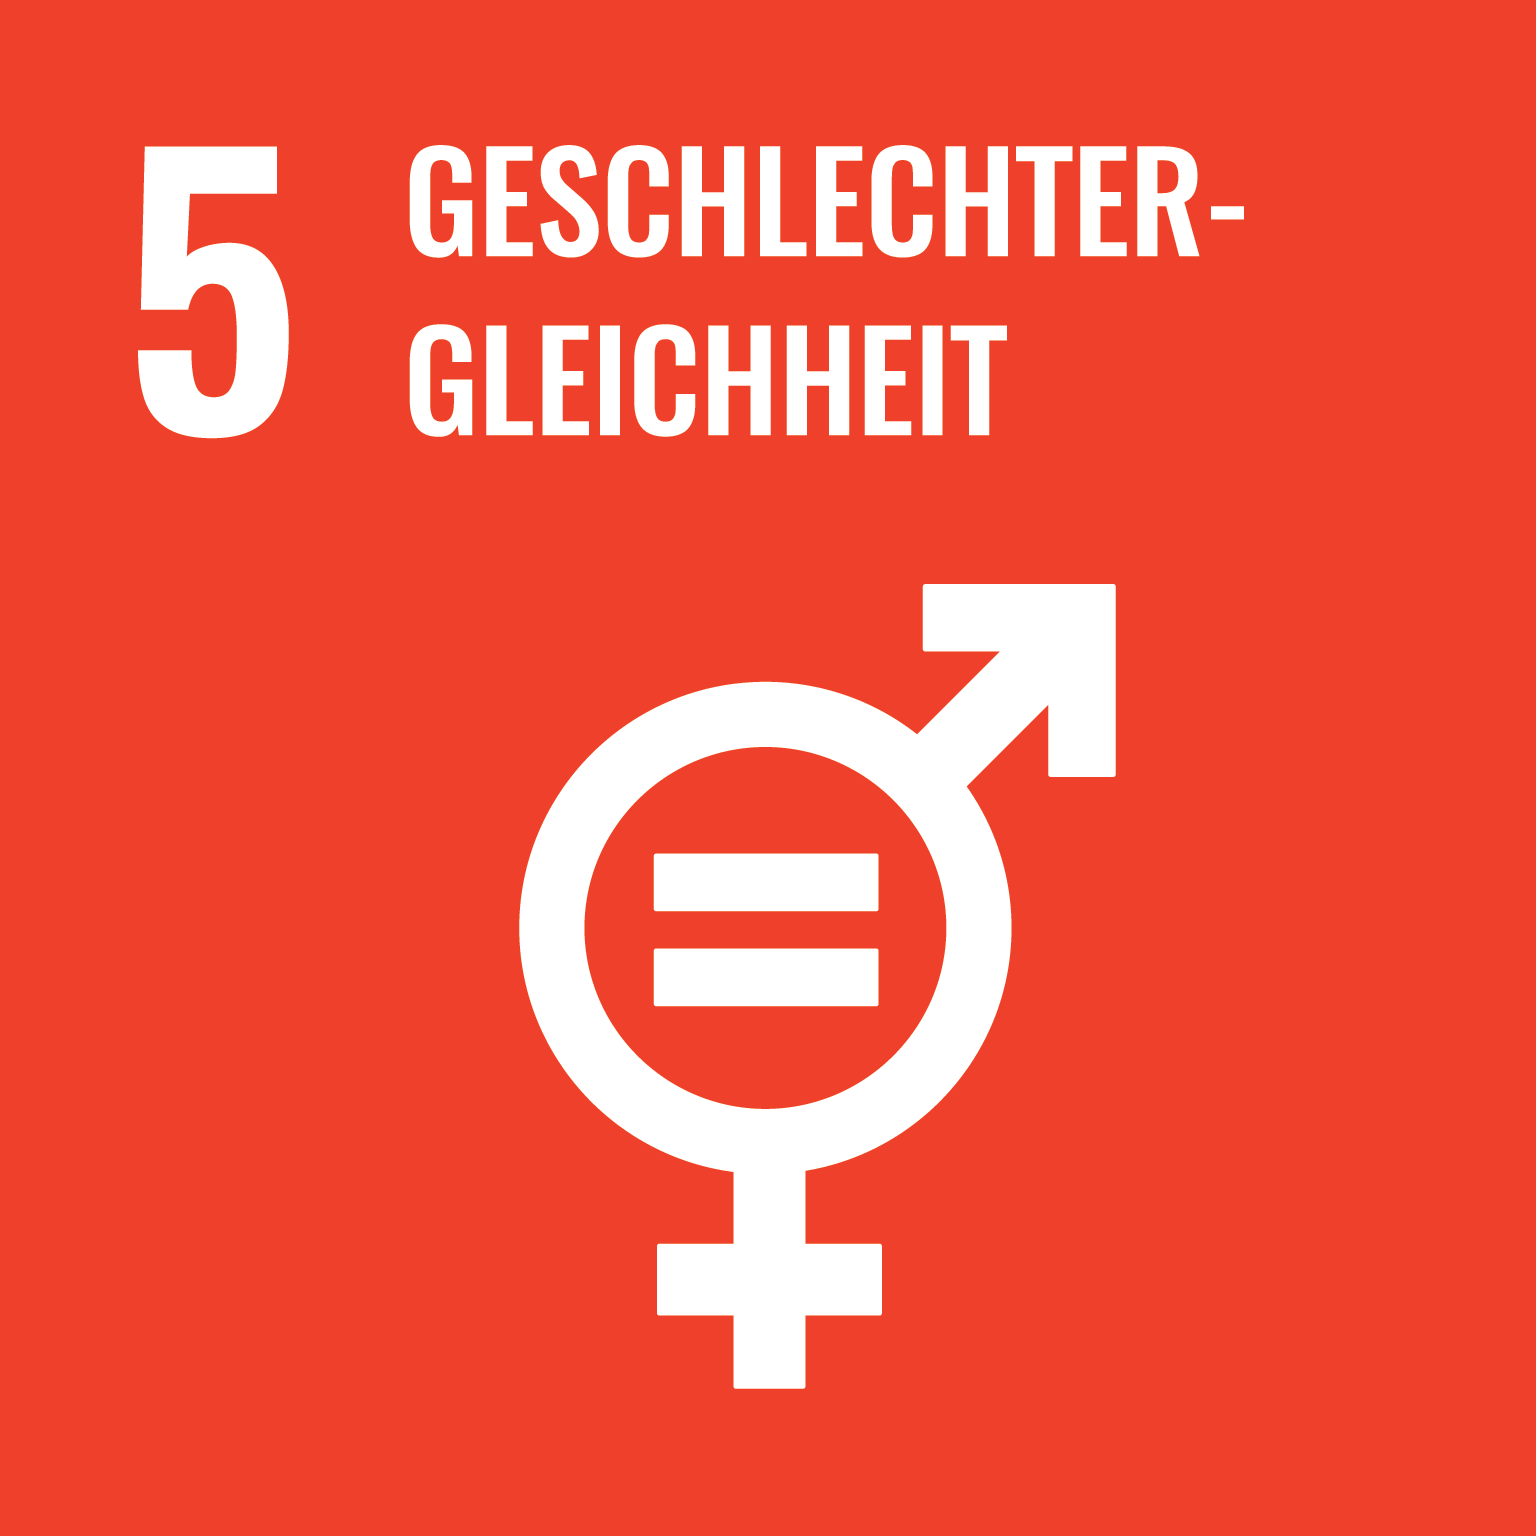 social development goal 5: Geschlechtergerechtigkeit